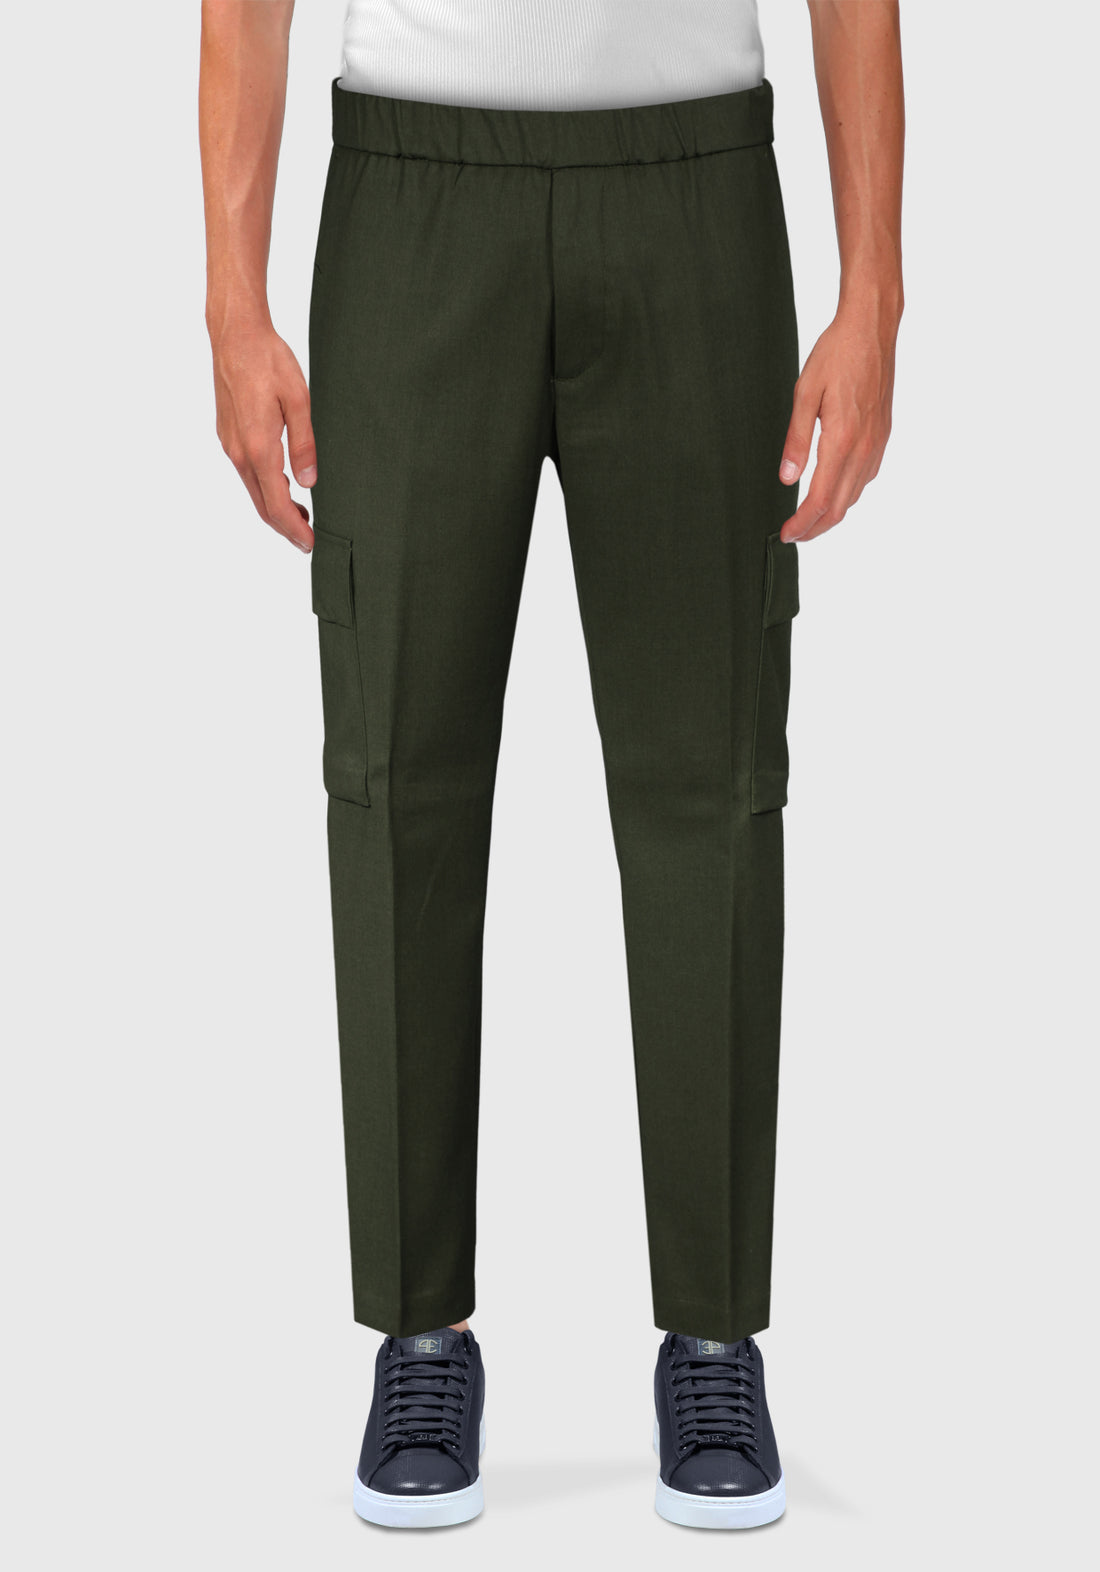 Pantalone fresco Lana con Tascone laterali - Militare